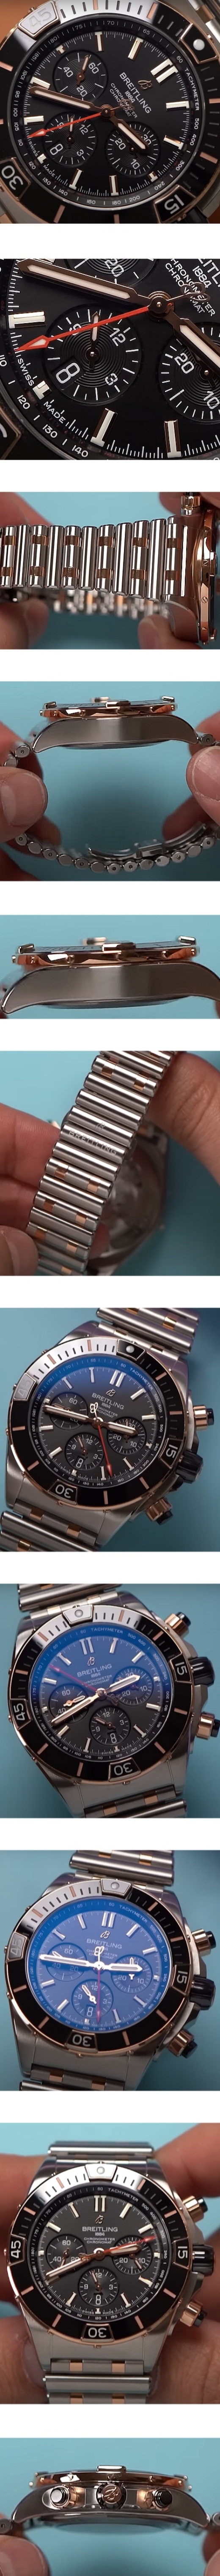 ブライトリング腕時計の説明